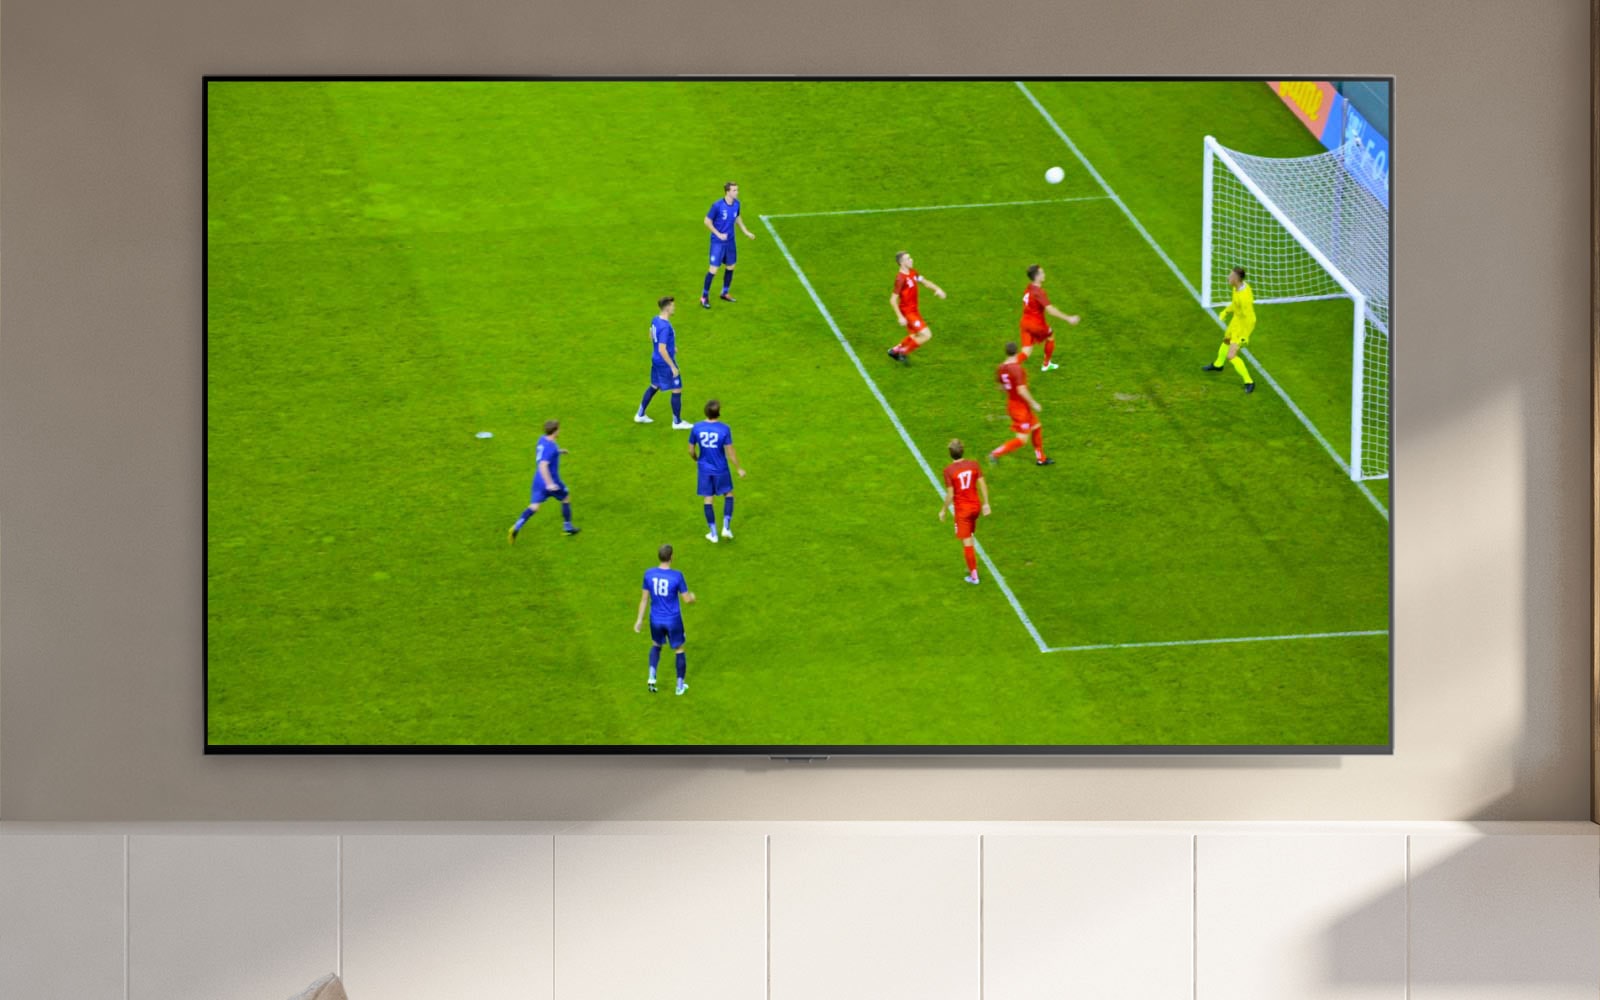 TV zaslon, na katerem je prikazan nogometni stadion in igralec, ki je dosegel gol (predvajajte video).